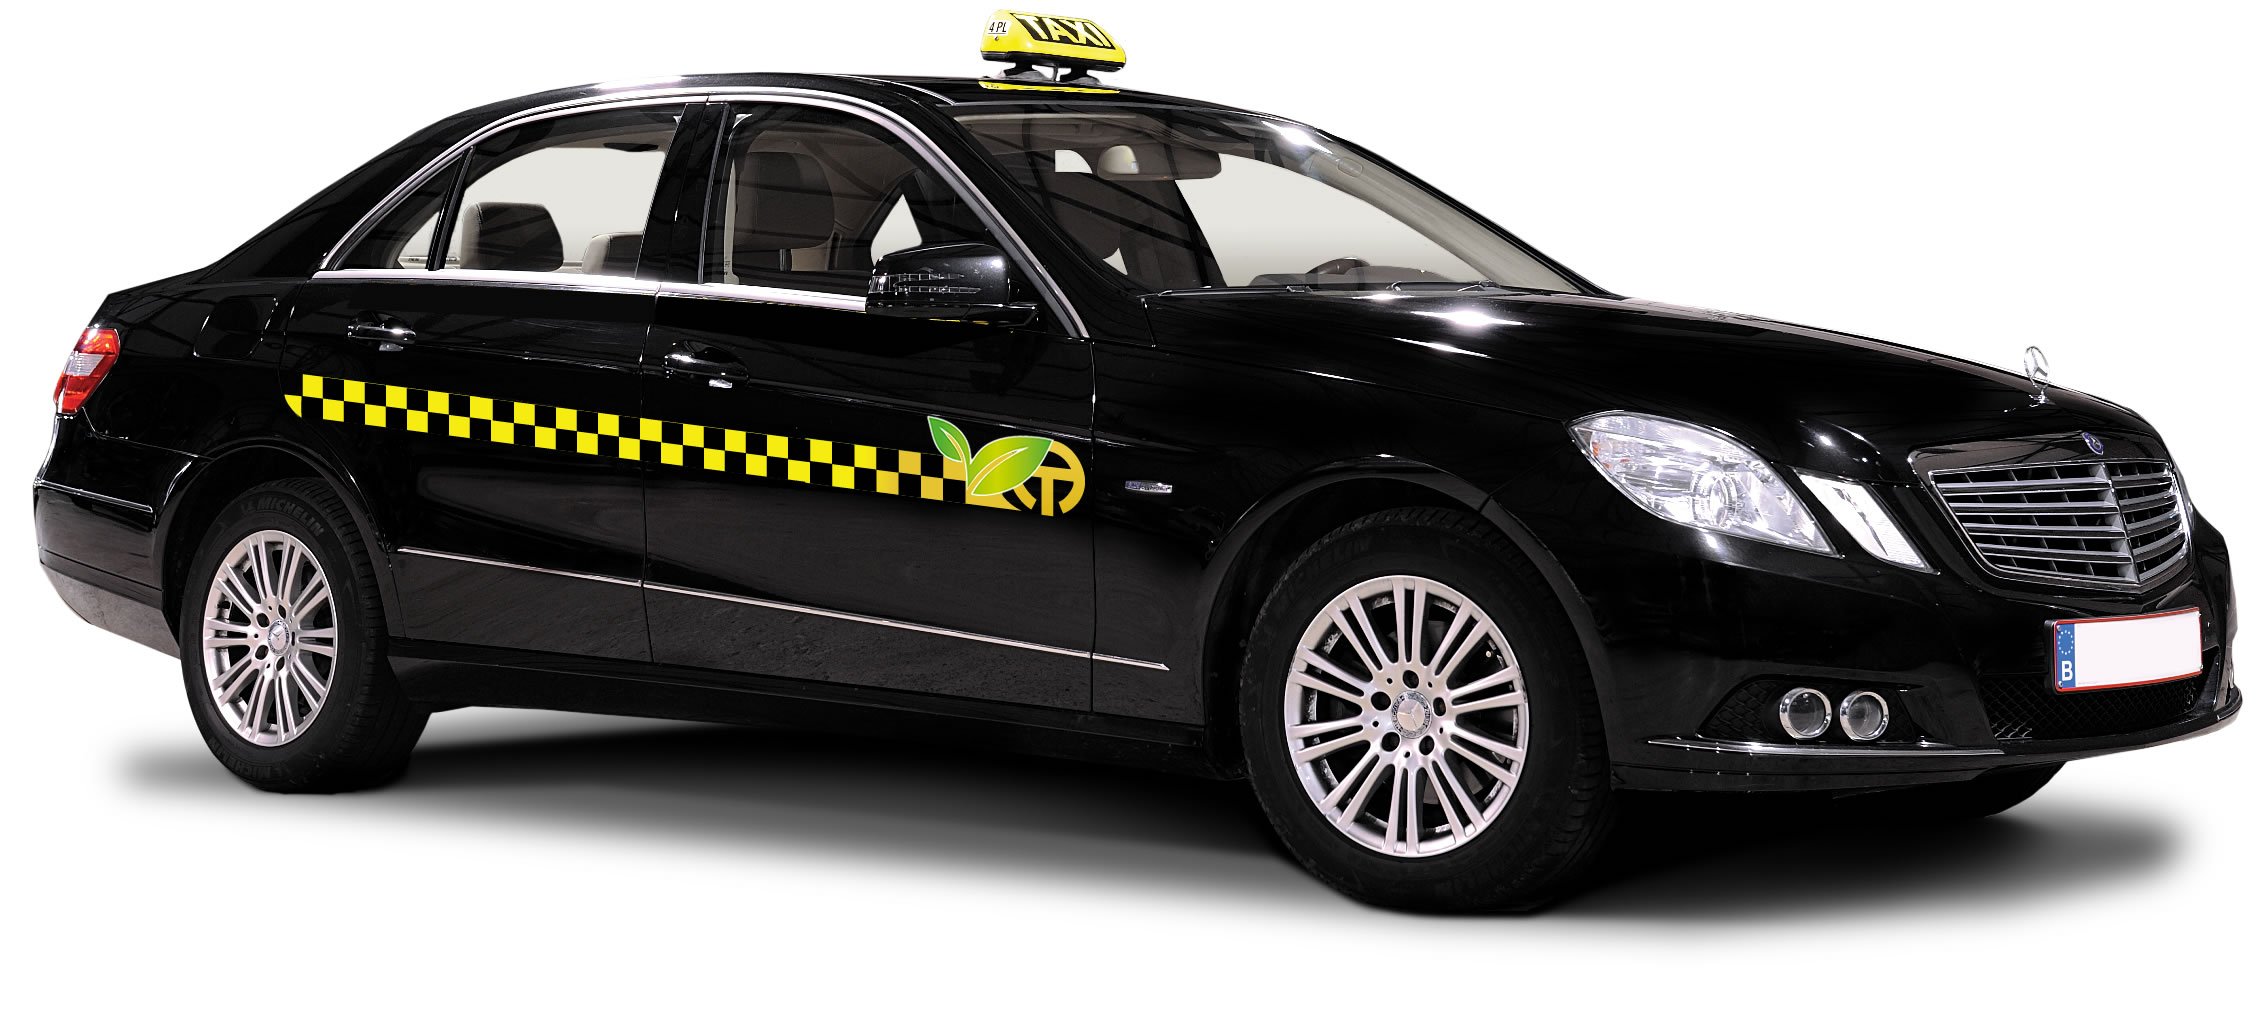 Antwerp-Tax kiest voor zwarte taxi&#039;s met geel-zwarte band (Antwerpen